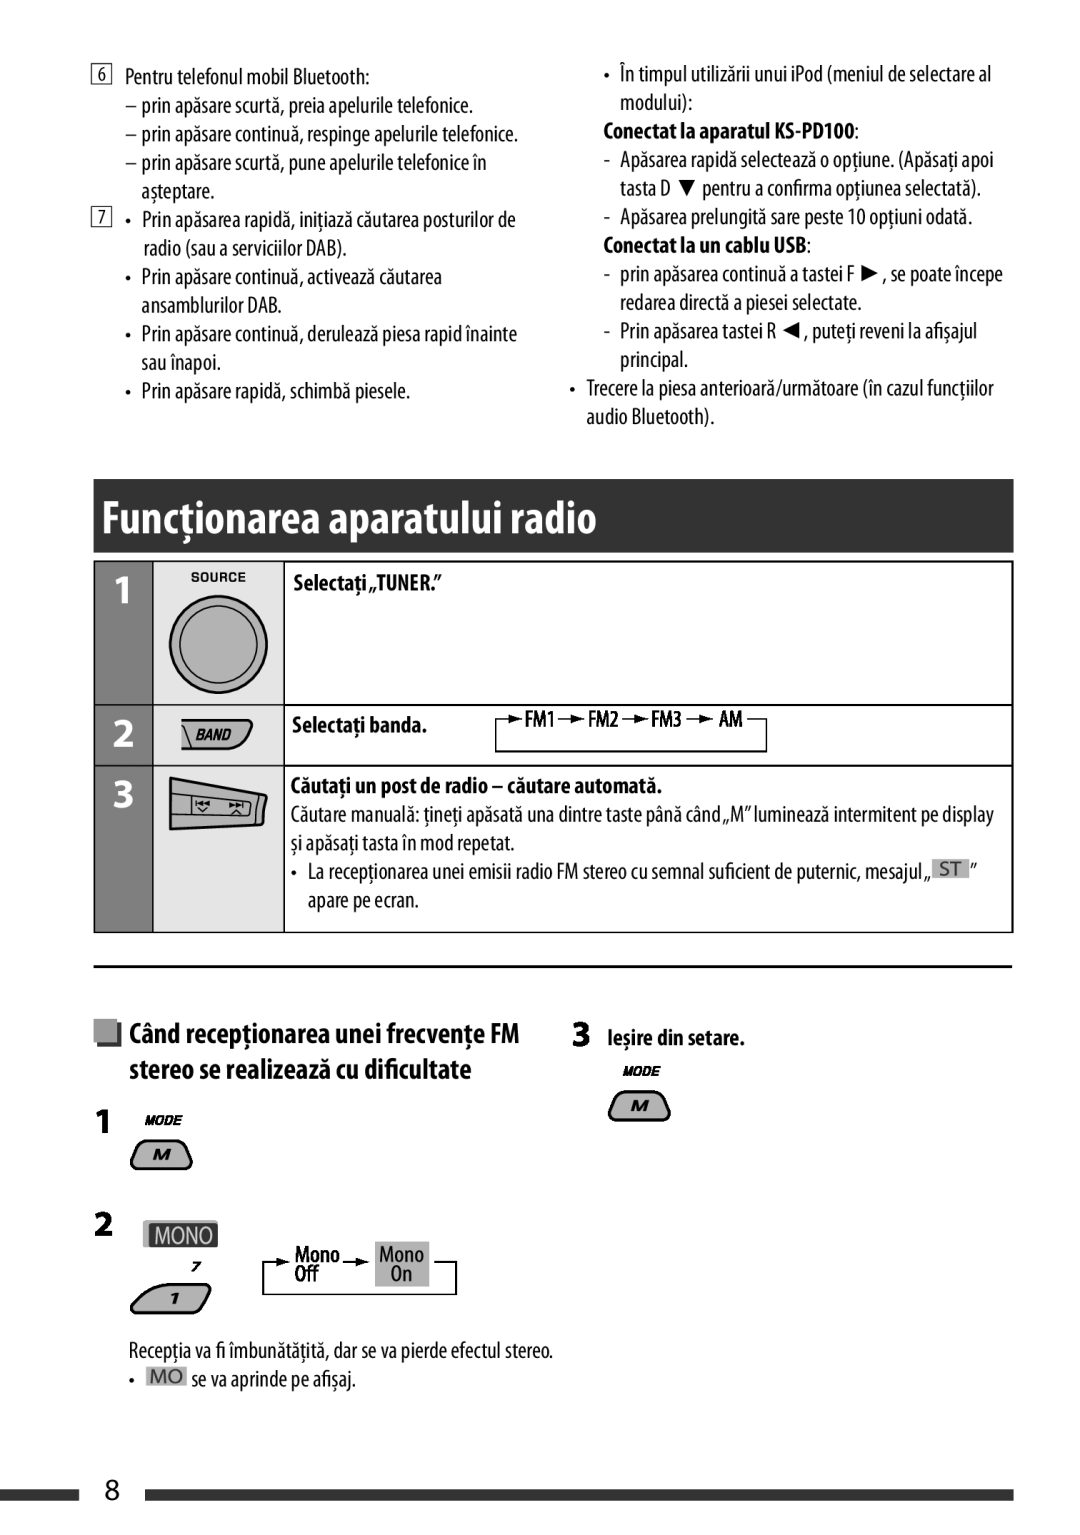 JVC KD-BT22 manual ListeningFuncţionareato theaparatuluiradio radio, Selectaţi“TUN„TUNER..”” Selectaţithebanda.nds, English 